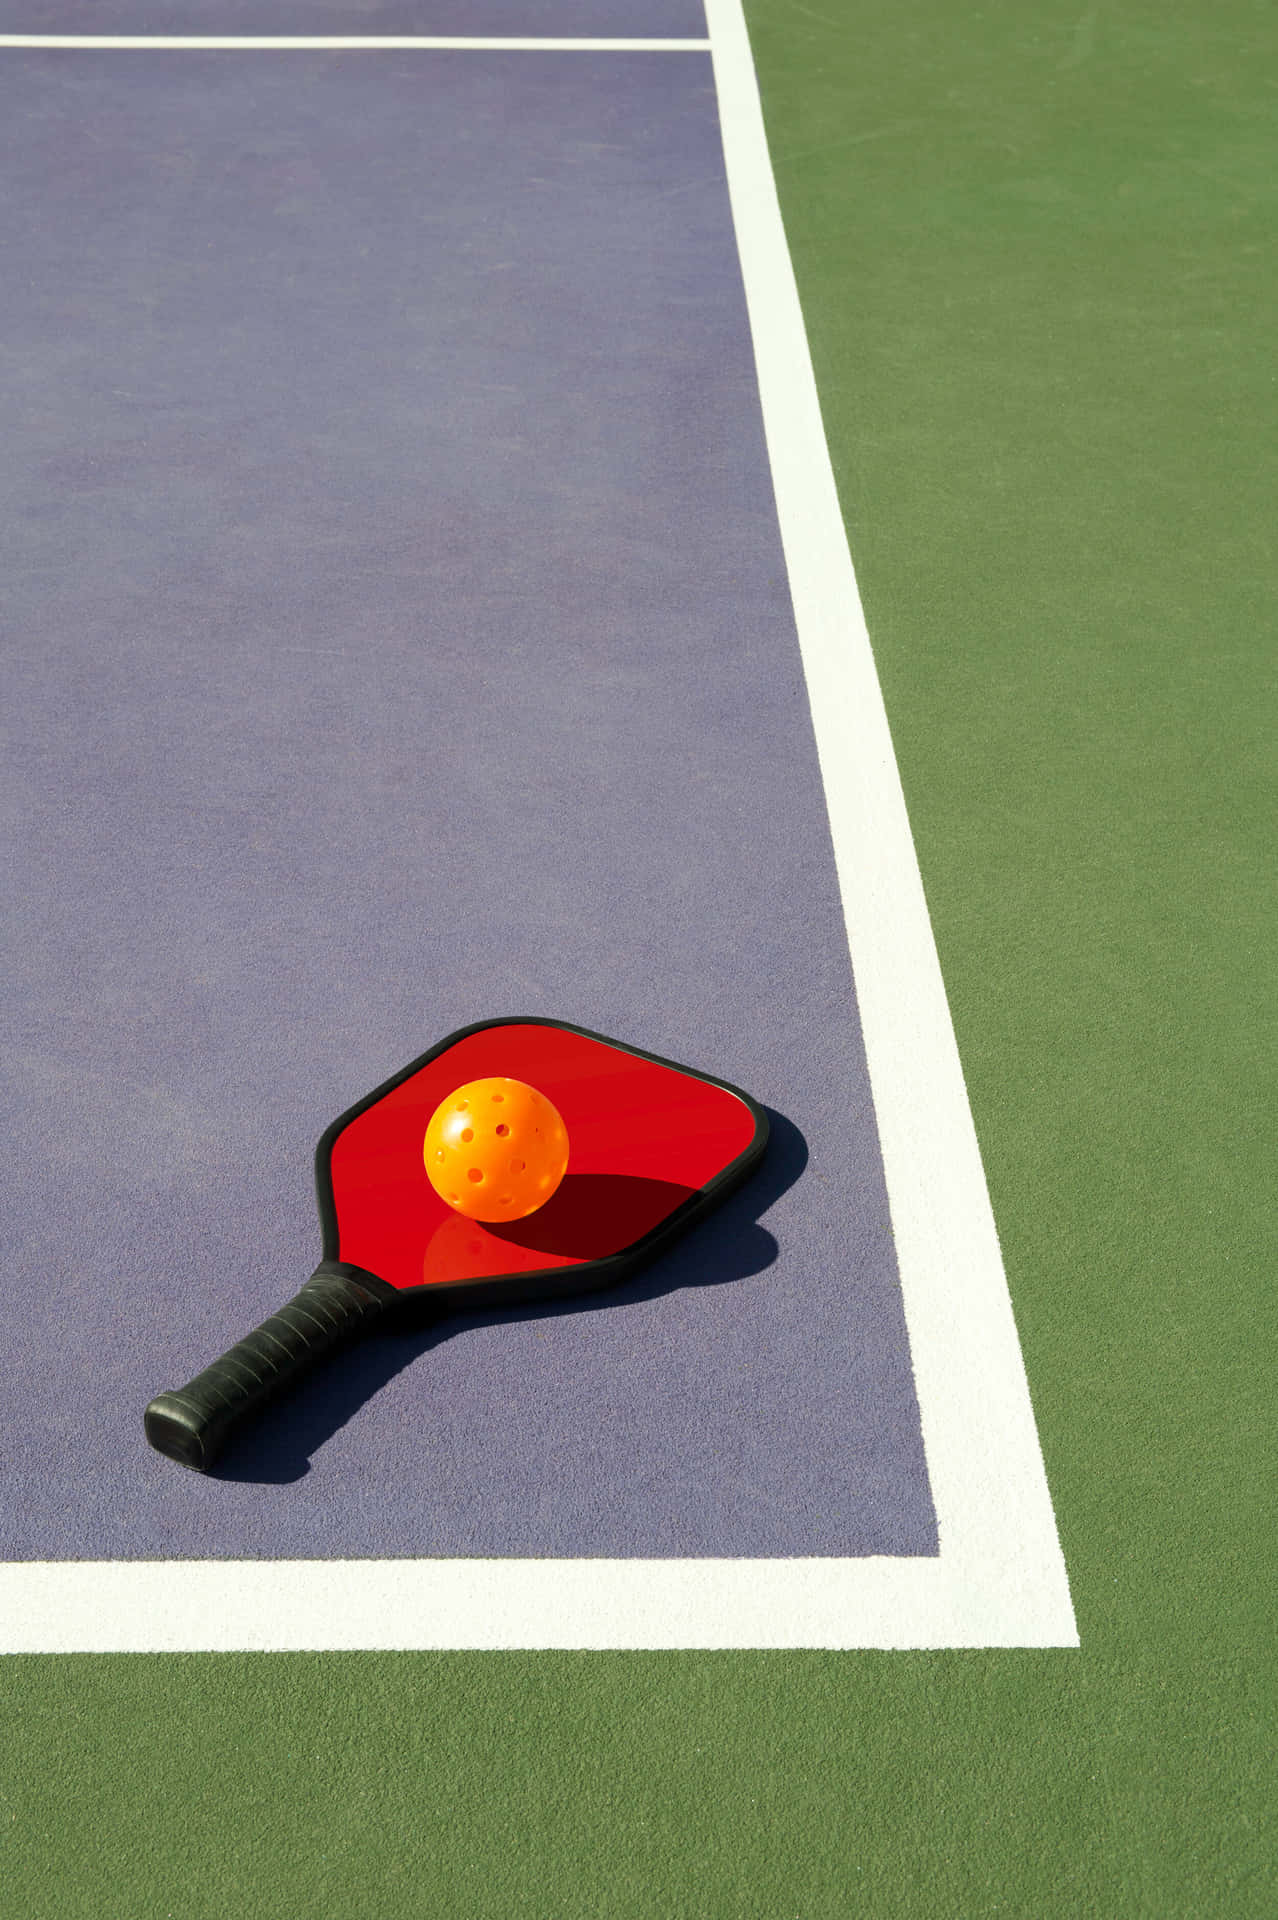 A Tennis Racket On A Tennis Court